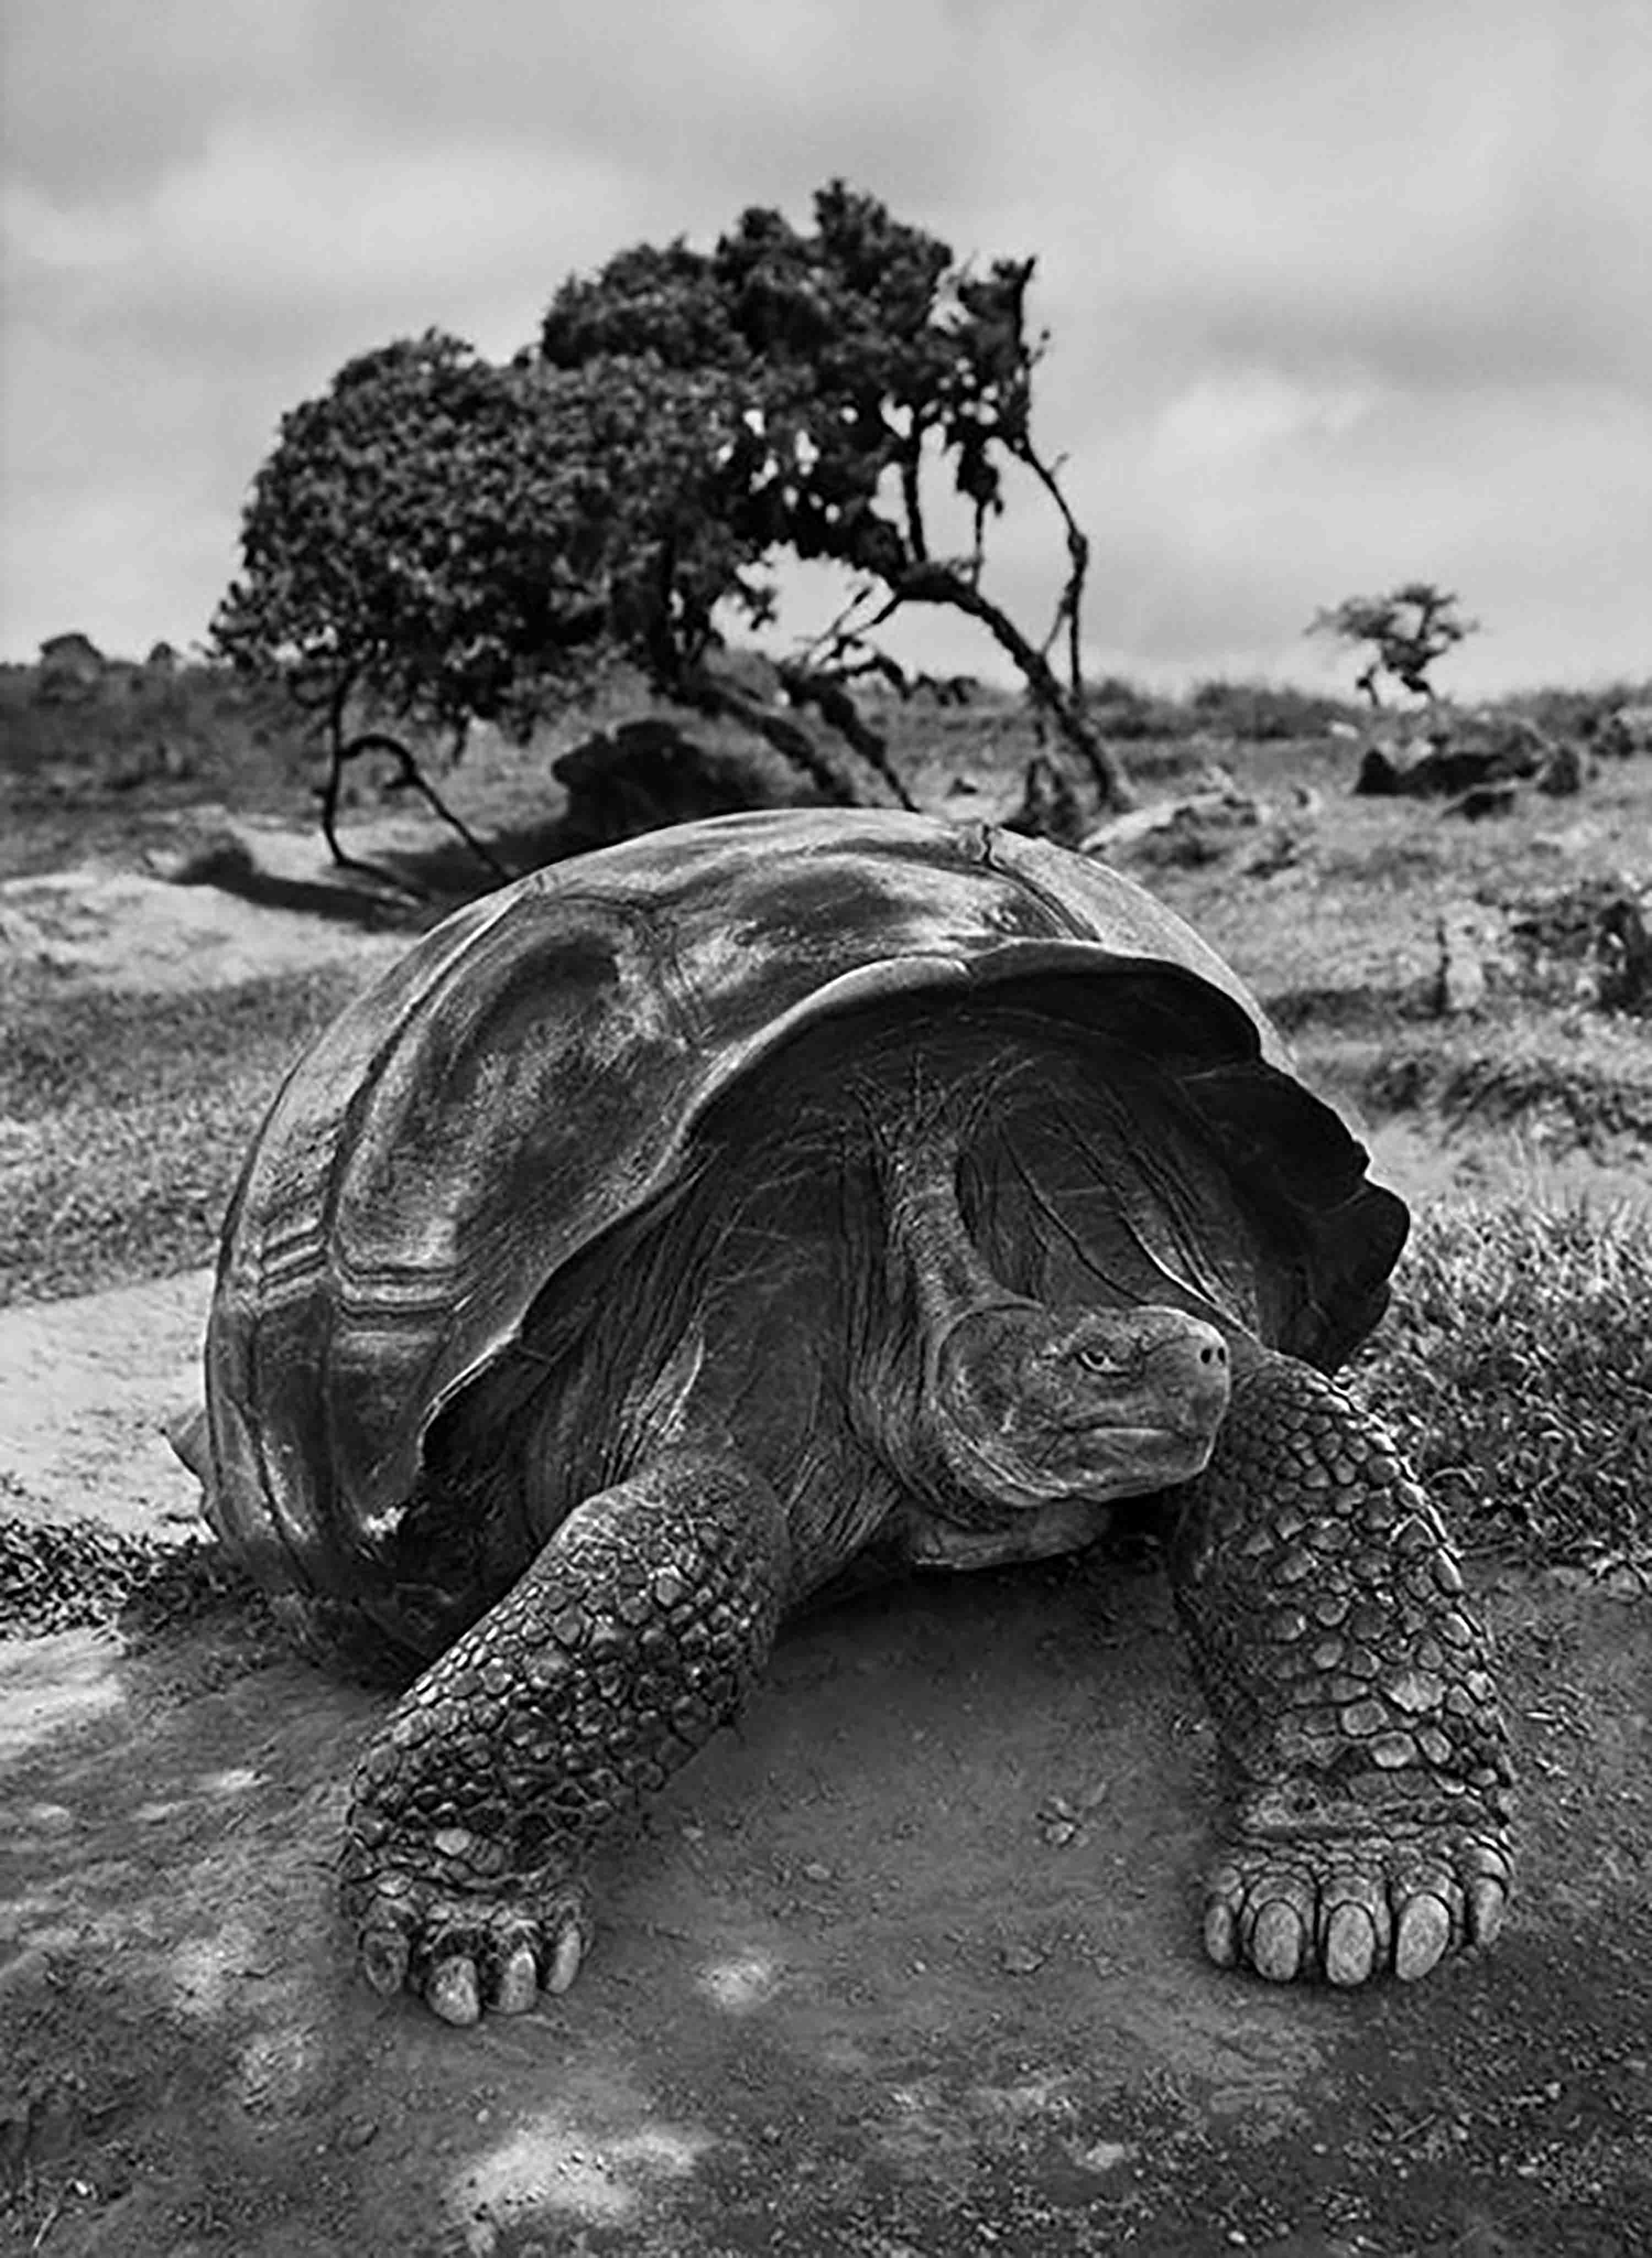 Sebastião Salgado, 'Giant Tortoise, Galapagos Islands, Ecuador, 2004'